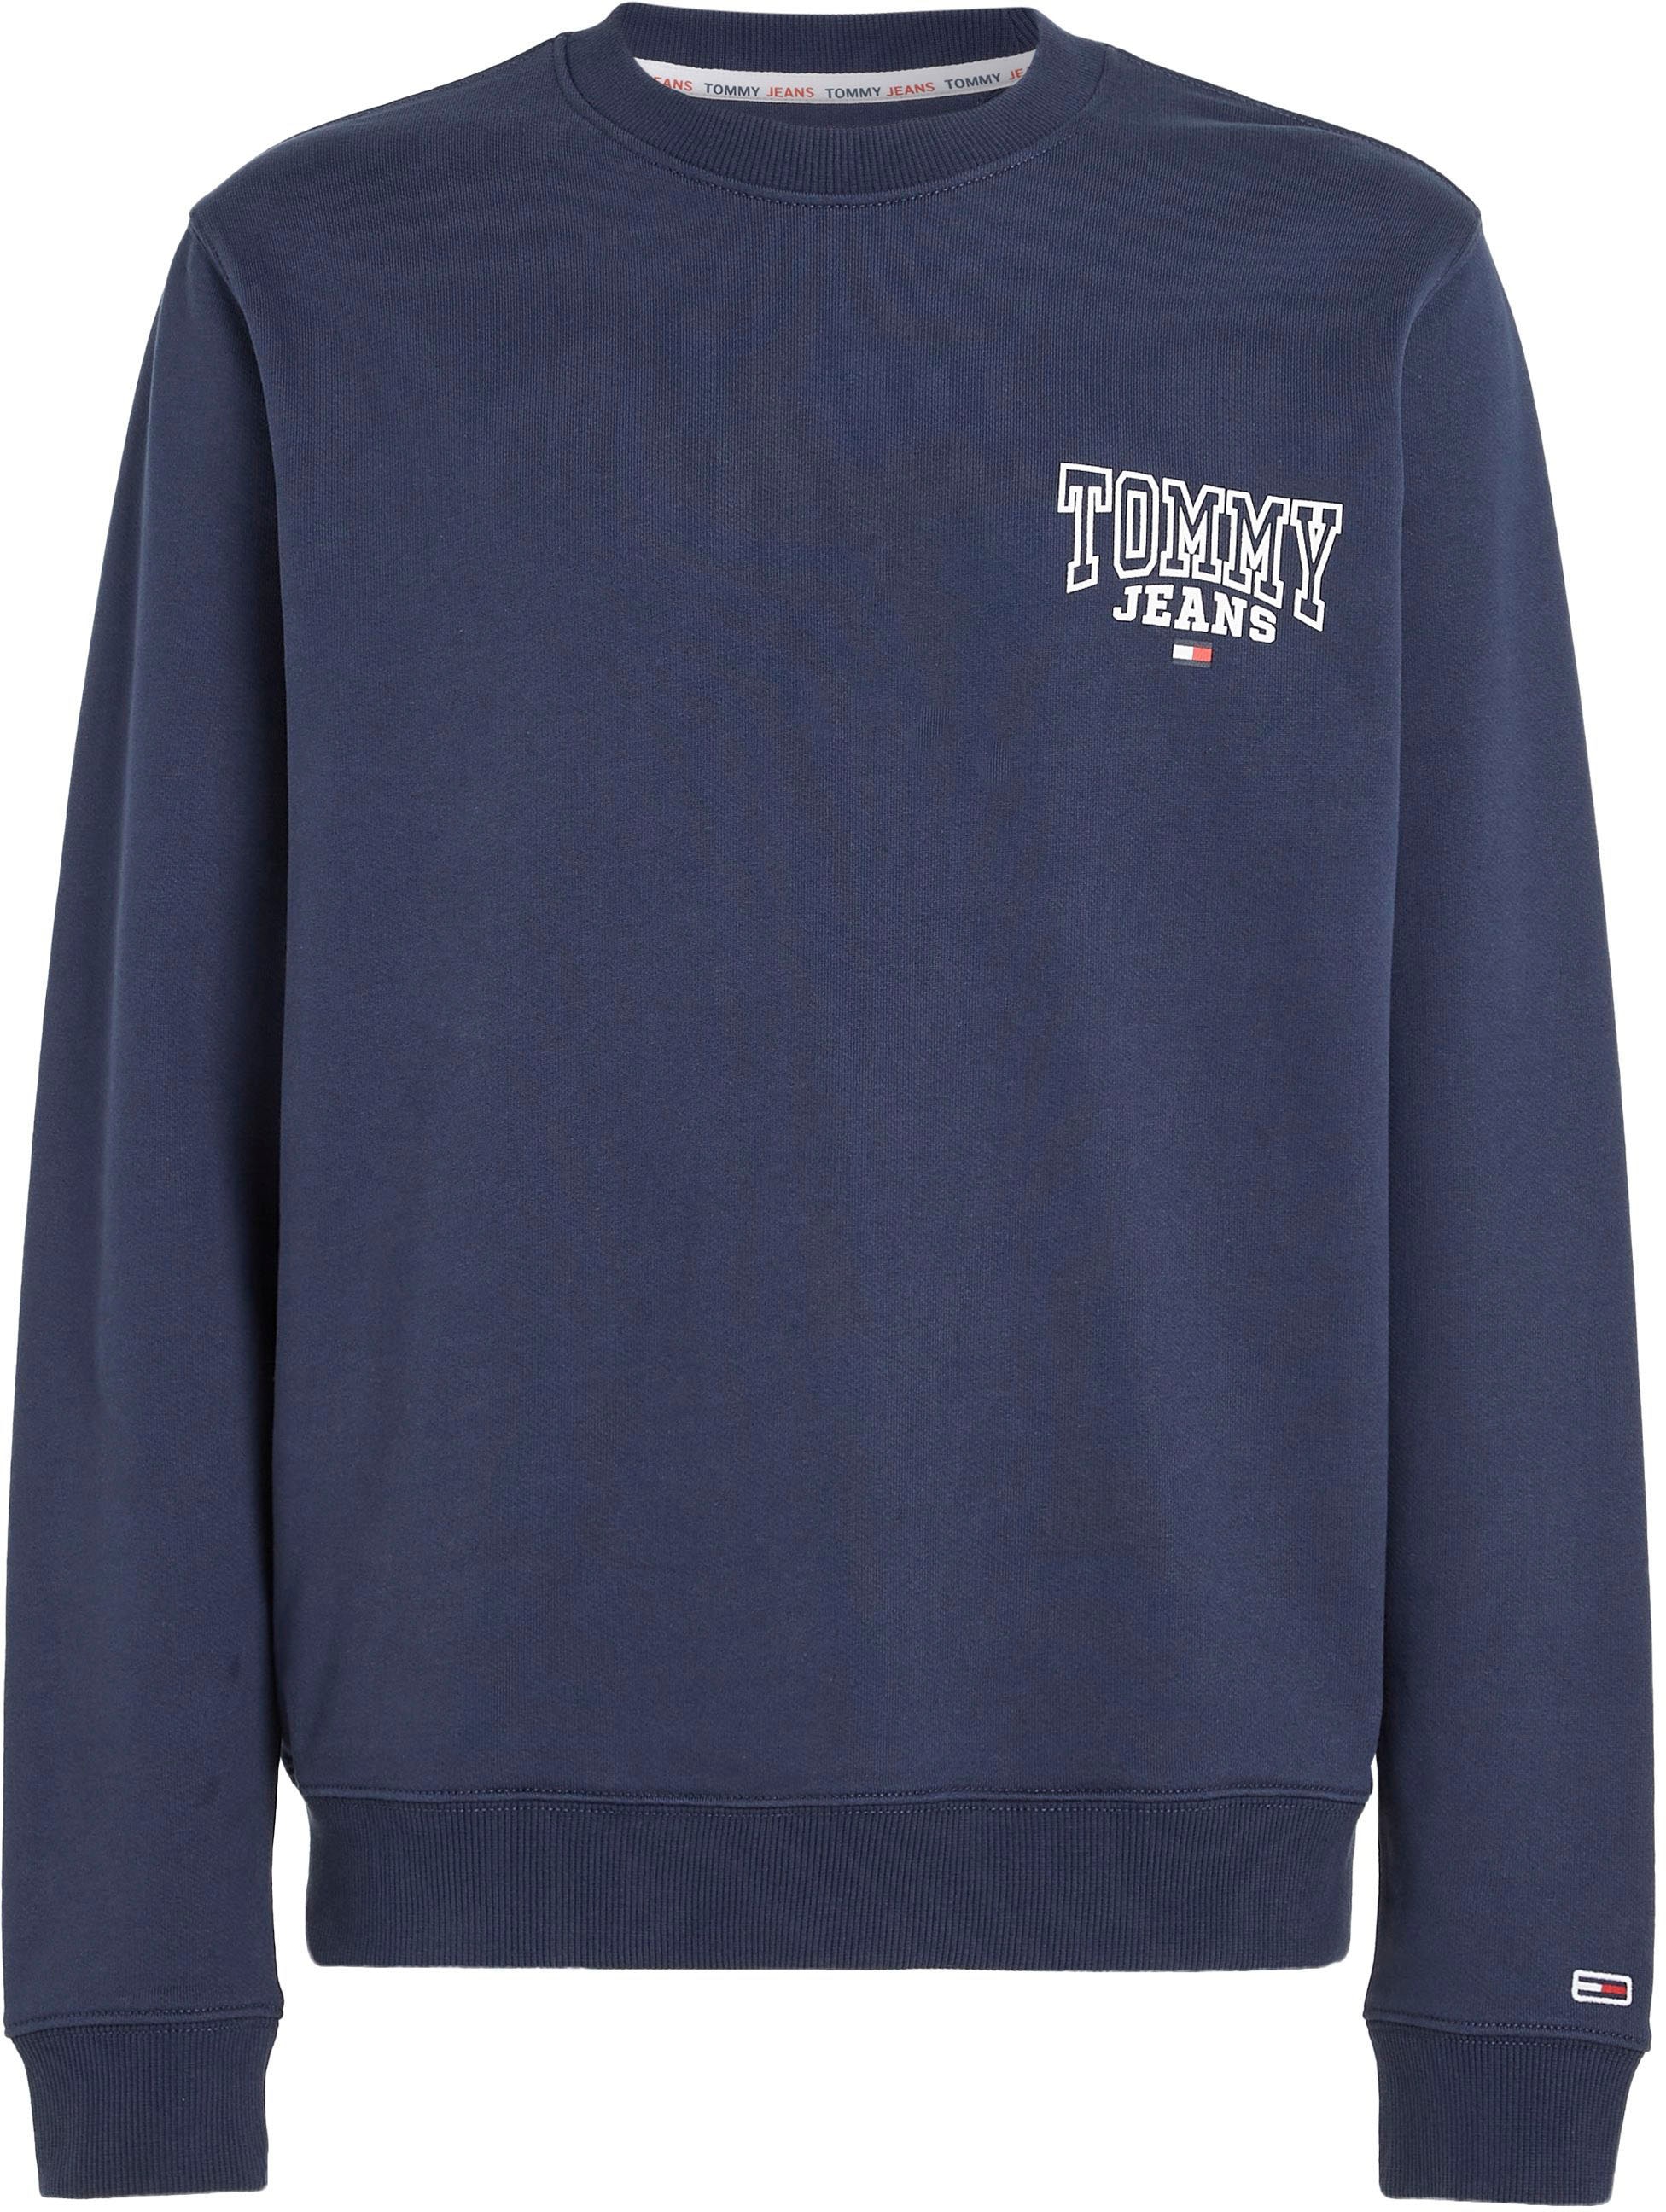 Tommy Jeans Sweatshirt »TJM CREW« kaufen bei ENTRY OTTO GRAPHIC REG online